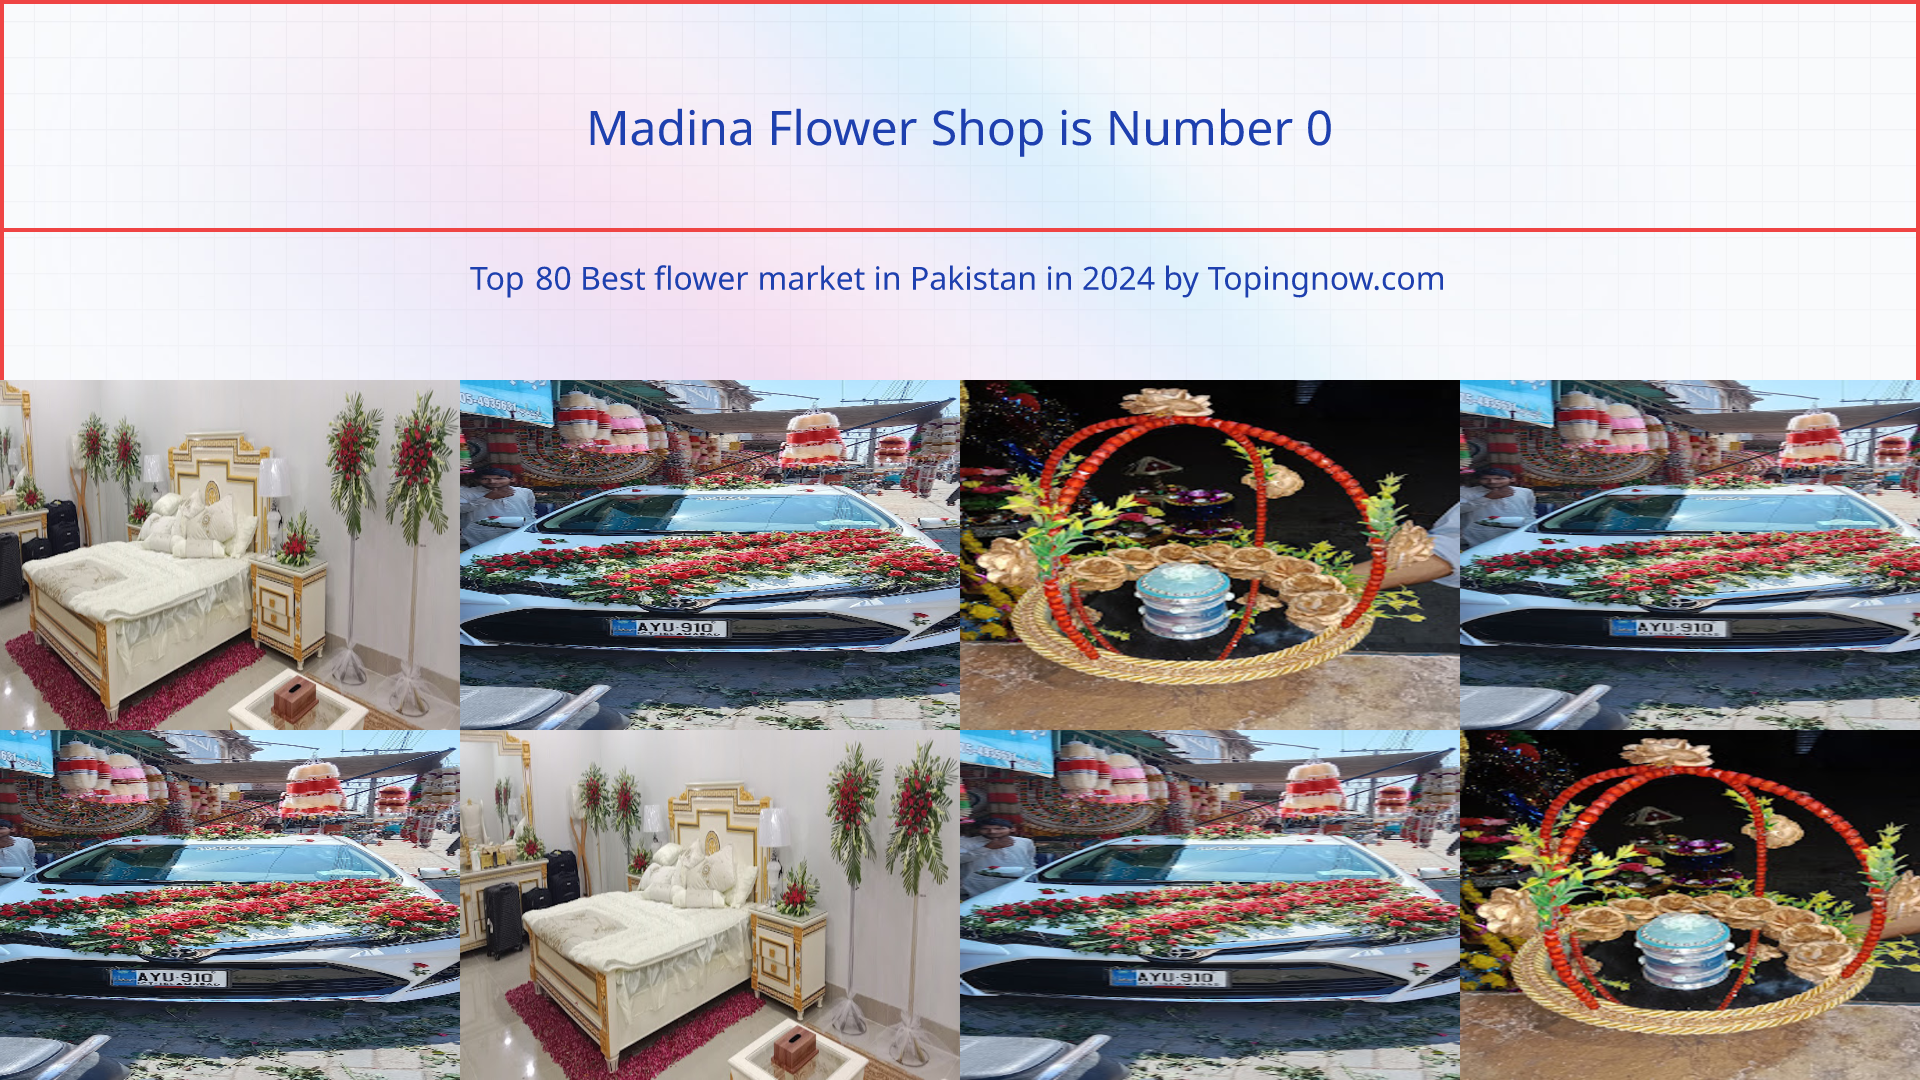 Madina Flower Shop: Top 80 Best flower market in Pakistan in 2024